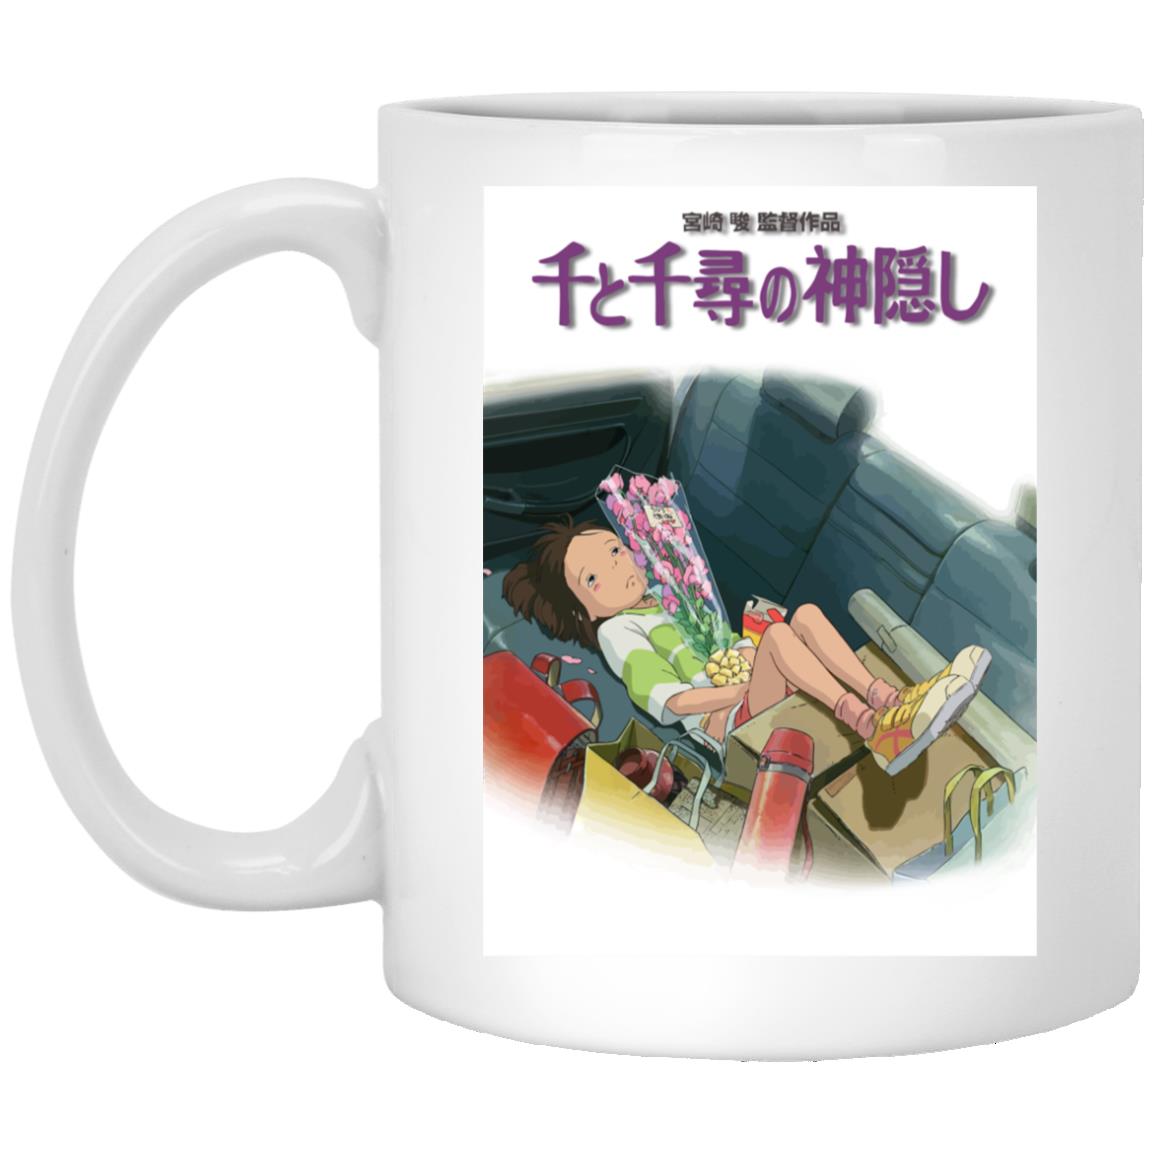 Spirited Away – Chihiro on the Car Mug